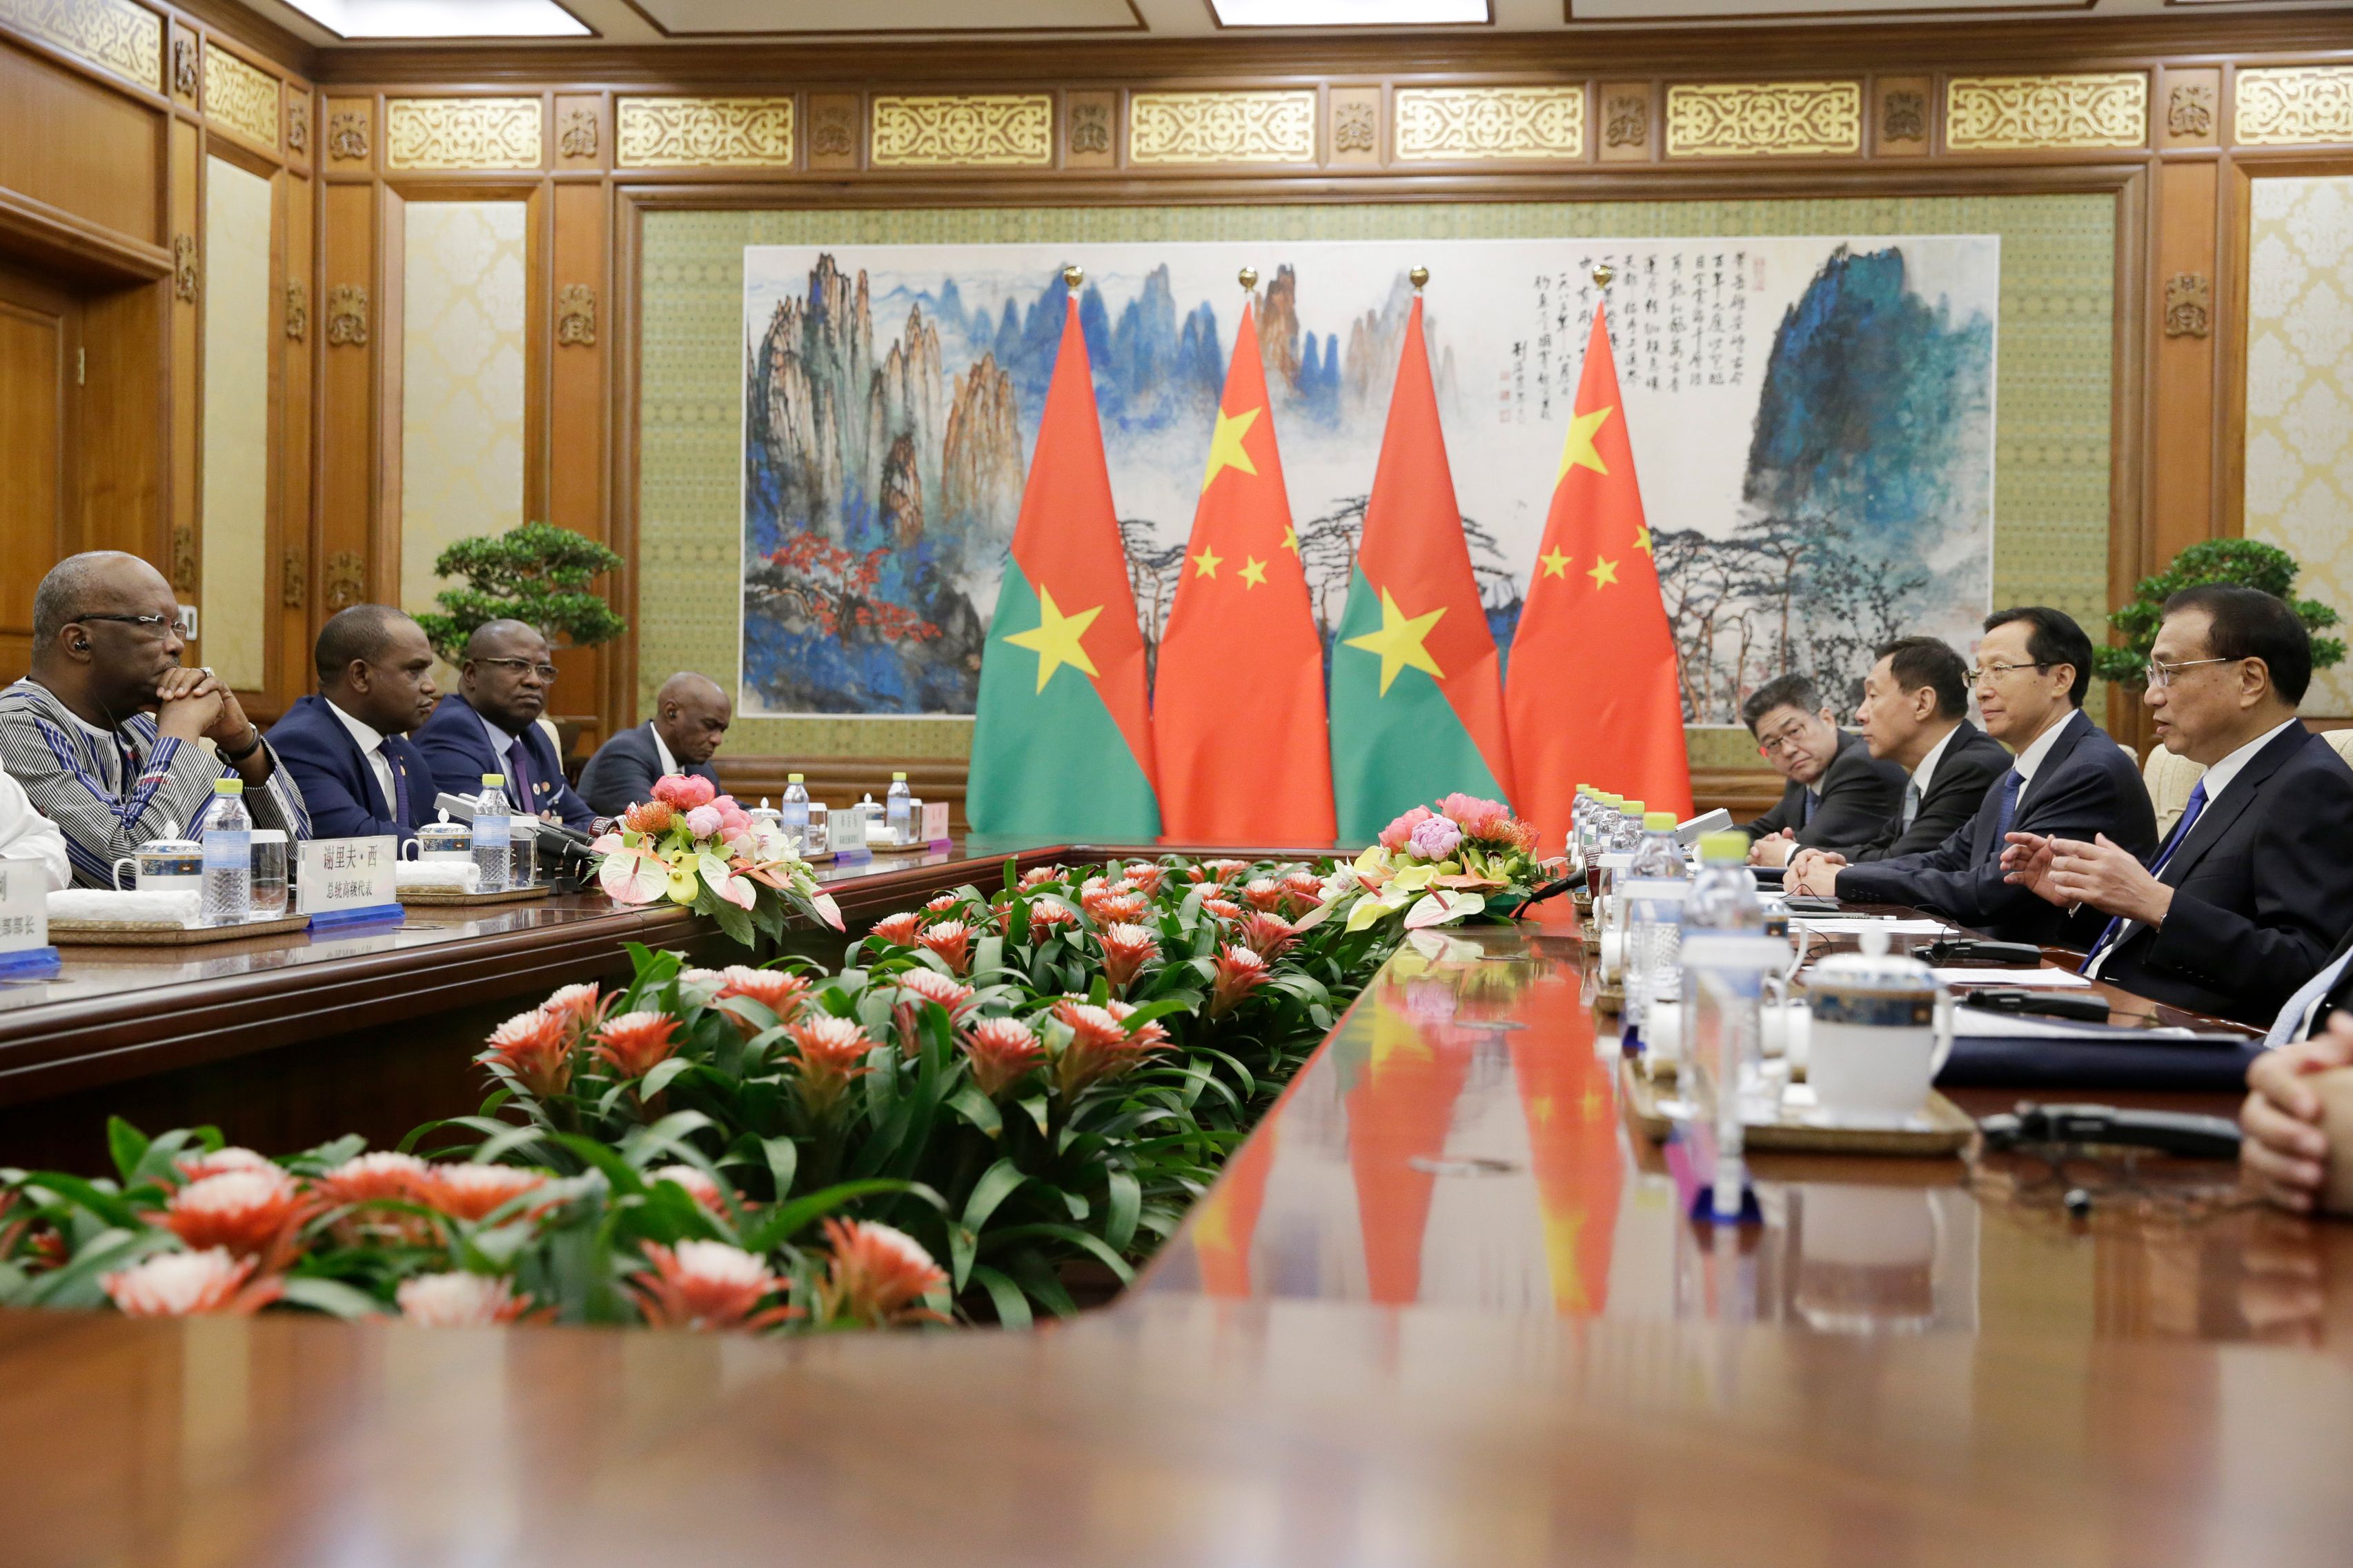 لى كه تشيانغ رئيس مجلس الدولة الصينى مع رئيس بوركينا فاسو روك مارك كريستيان كابور